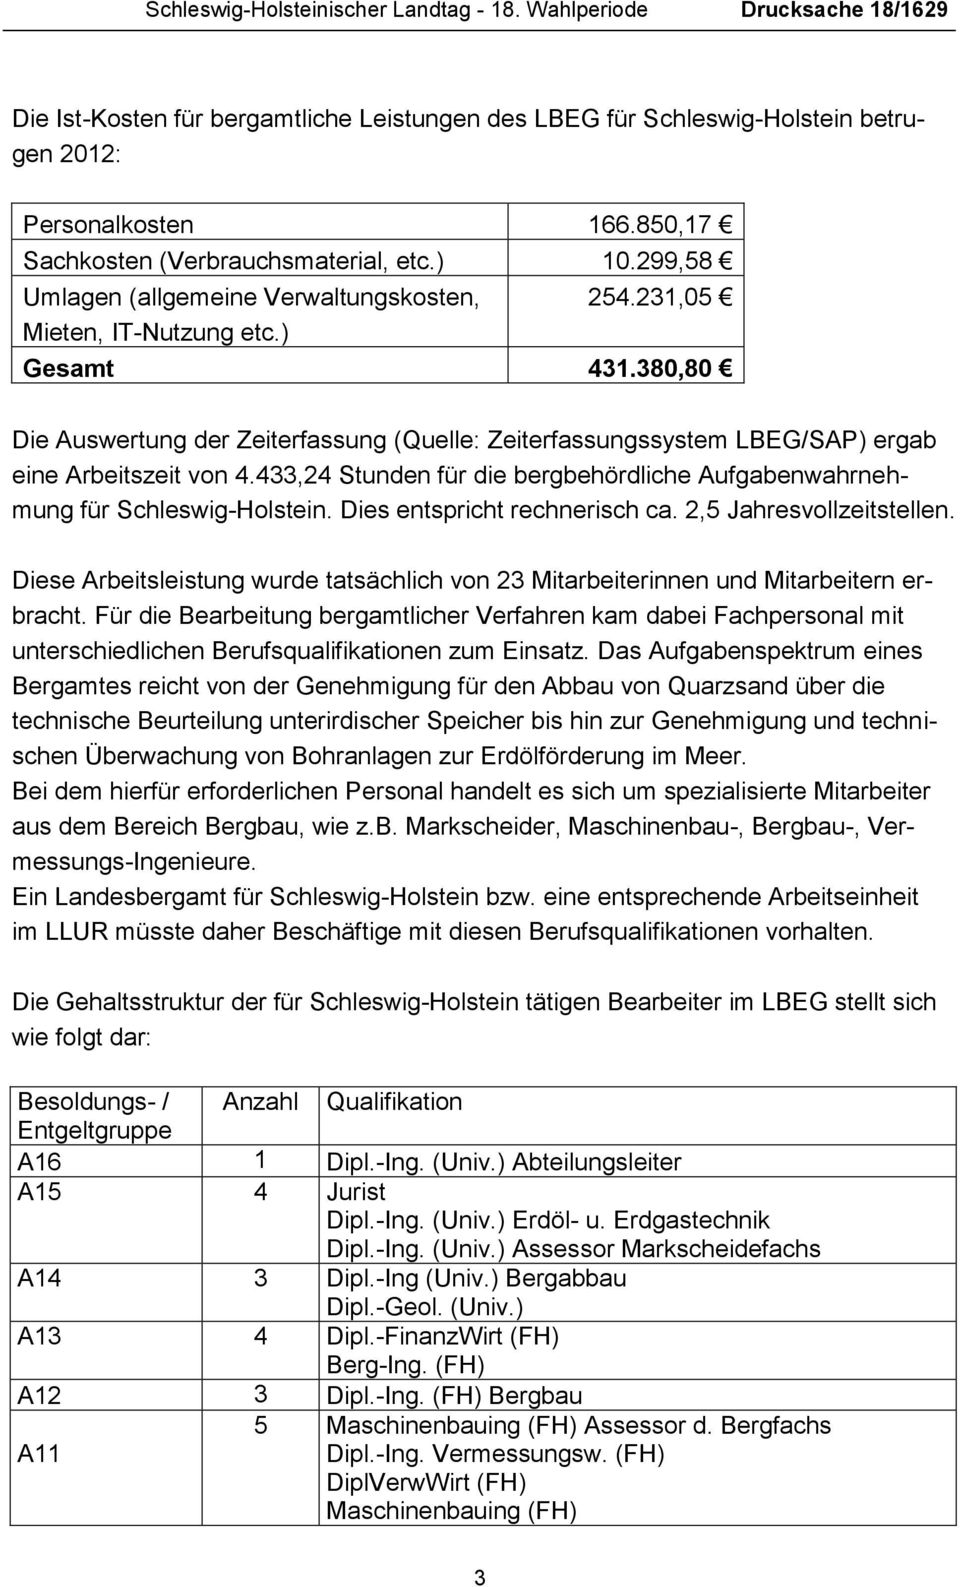 380,80 Die Auswertung der Zeiterfassung (Quelle: Zeiterfassungssystem LBEG/SAP) ergab eine Arbeitszeit von 4.433,24 Stunden für die bergbehördliche Aufgabenwahrnehmung für Schleswig-Holstein.